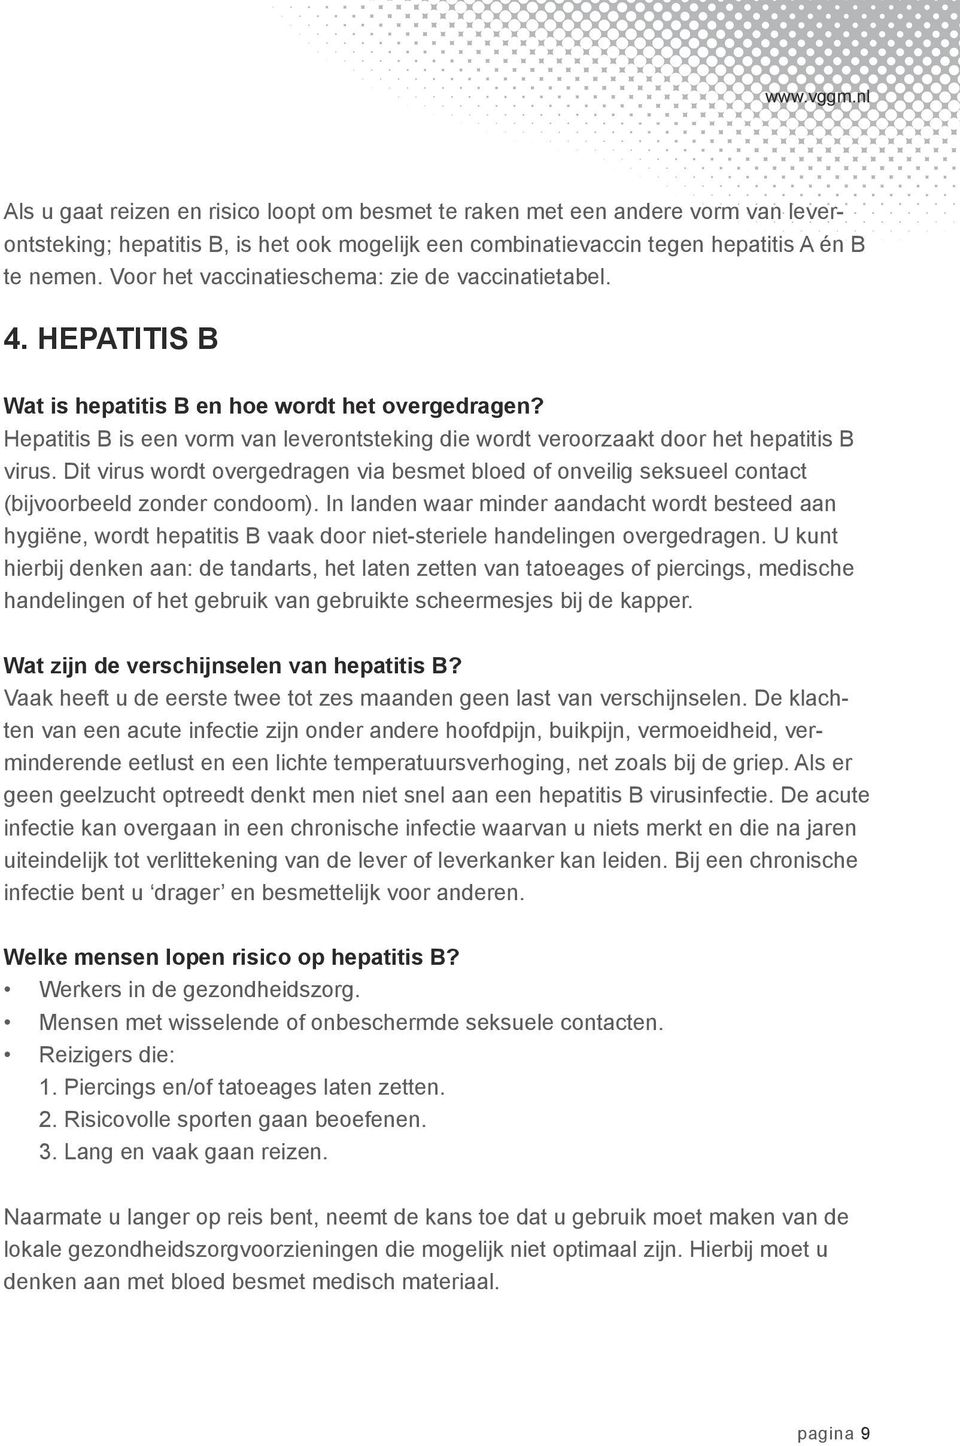 Hepatitis B is een vorm van leverontsteking die wordt veroorzaakt door het hepatitis B virus. Dit virus wordt overgedragen via besmet bloed of onveilig seksueel contact (bijvoorbeeld zonder condoom).